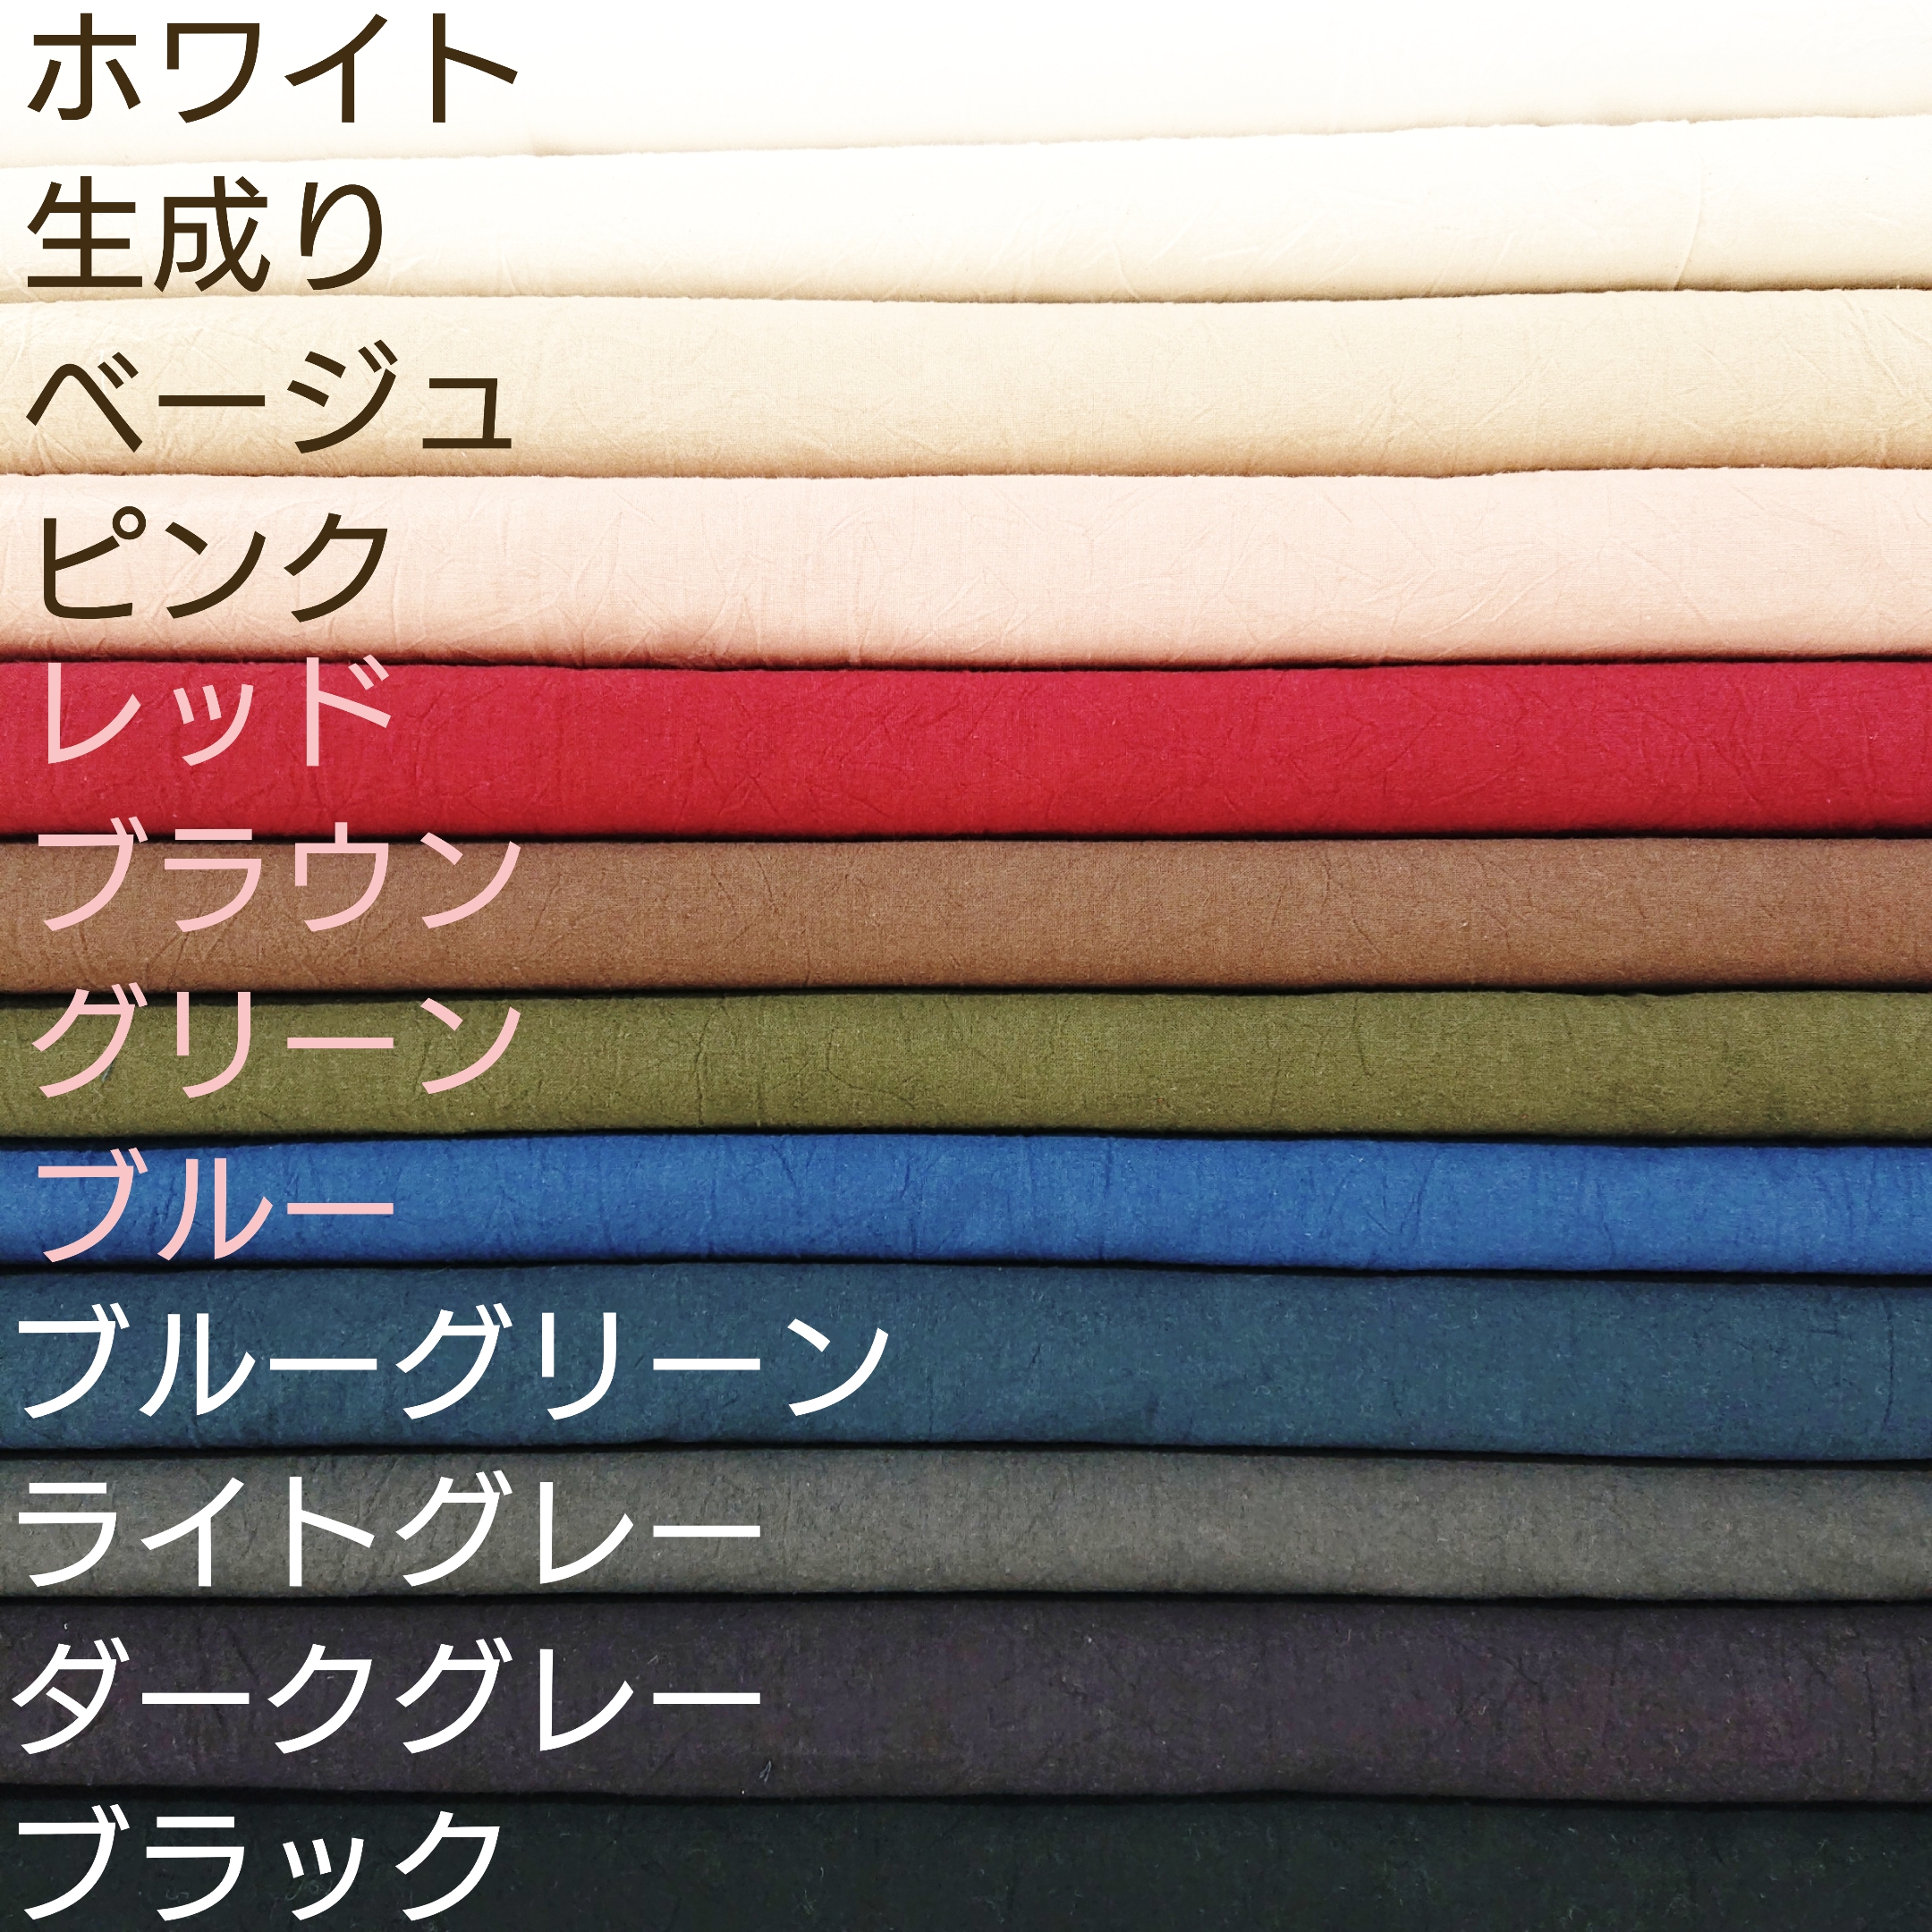 オーダーメイドの色見本 Iichi ハンドメイド クラフト作品 手仕事品の通販